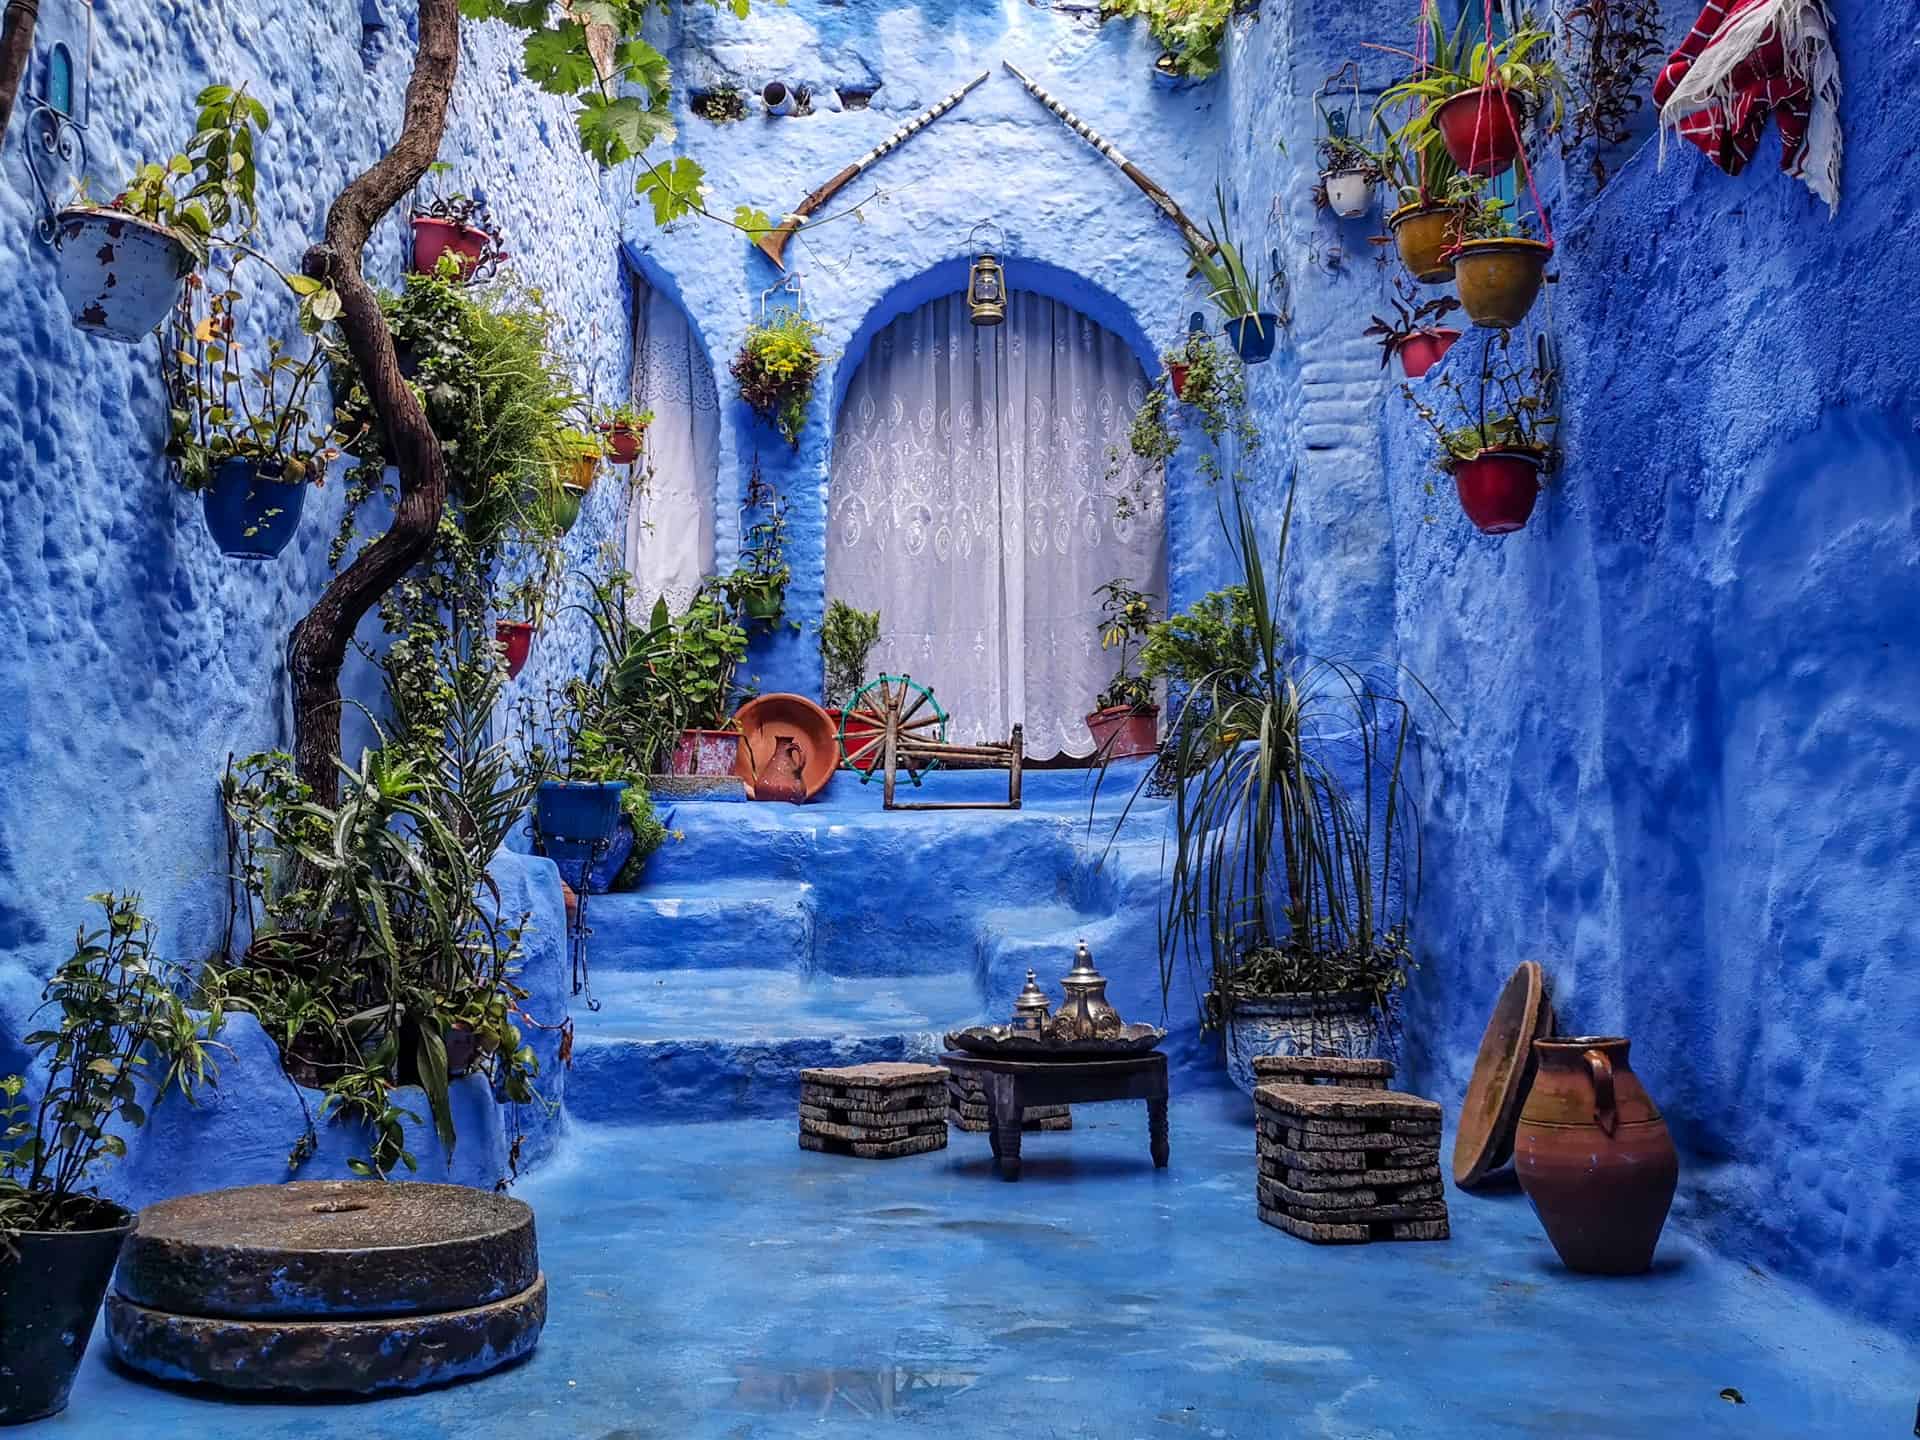 Chefchaouen blue doors and walls